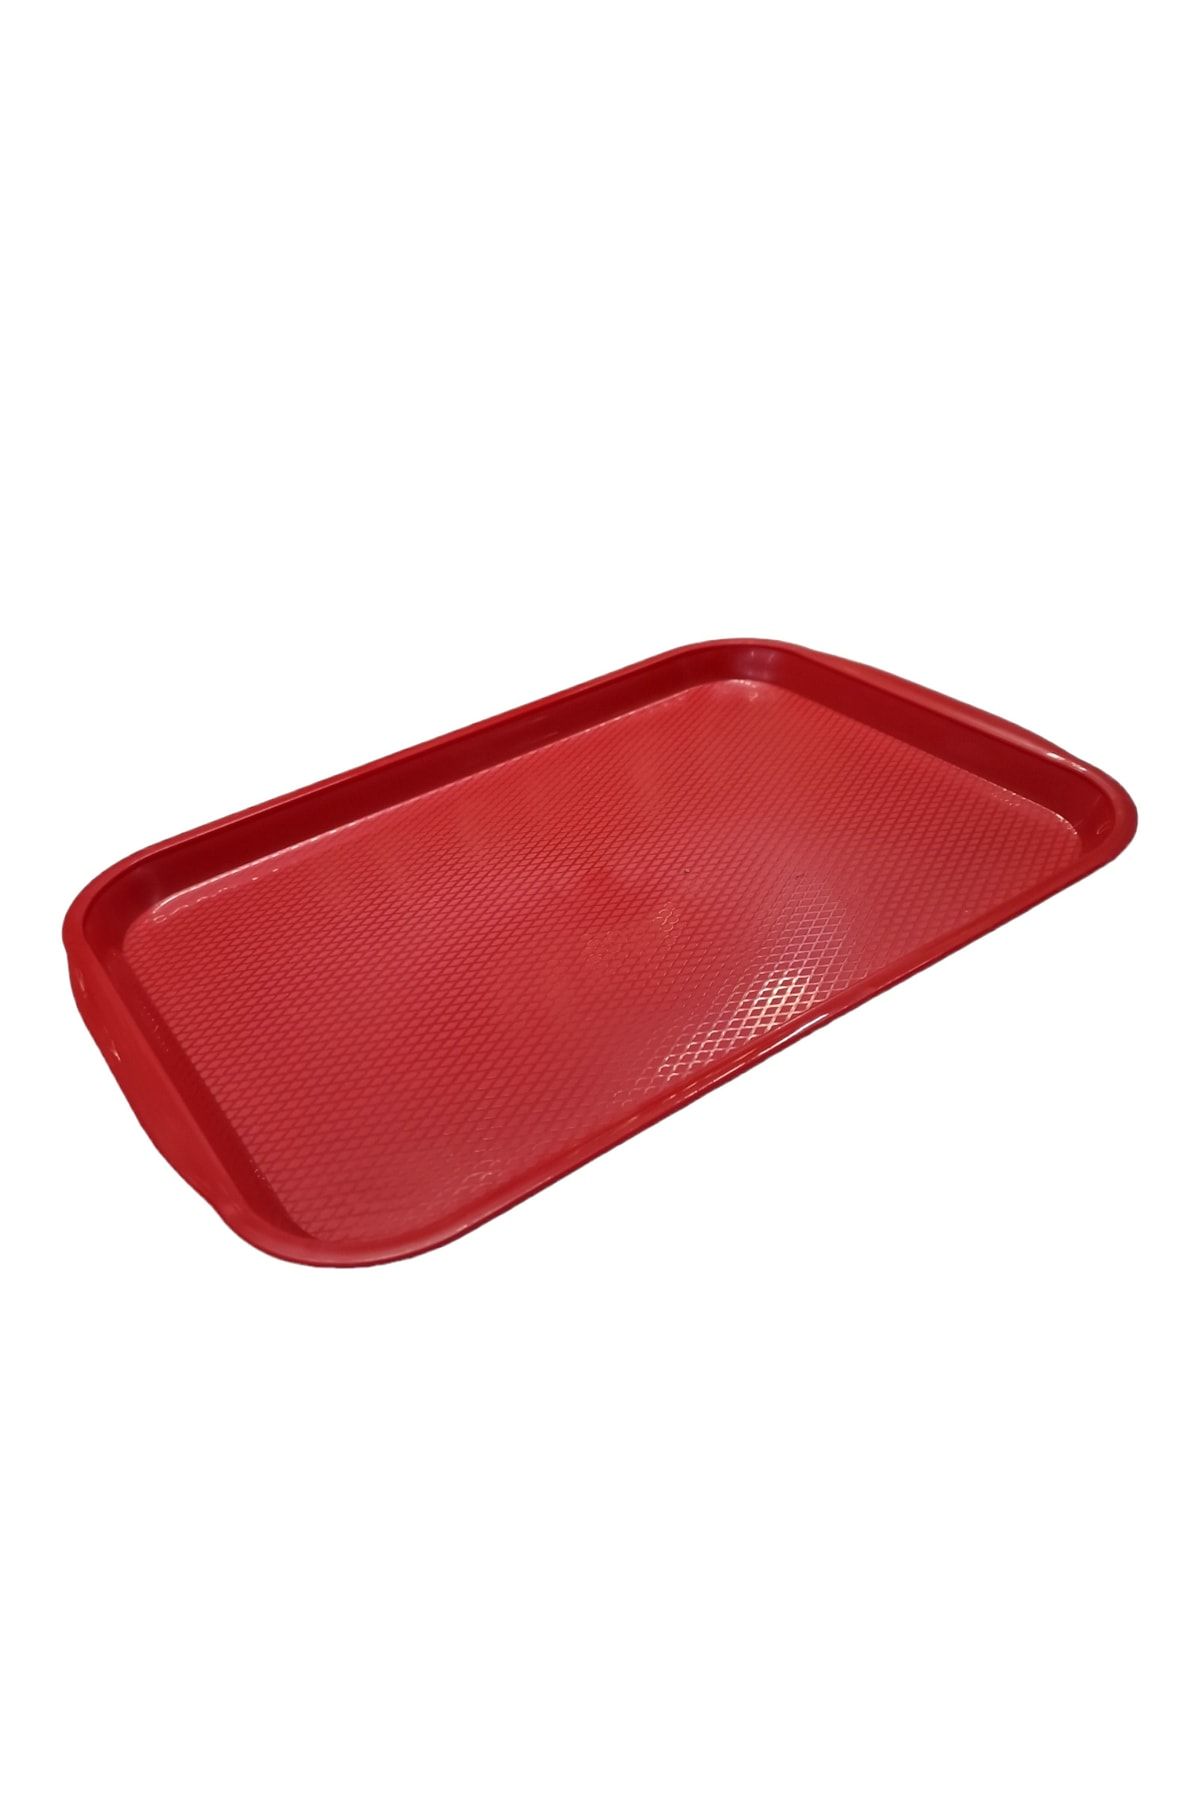 Matar Endüstriyel Mutfak Ekipmanları Abs Plastik Kırmızı Renk Servis Tepsisi 40*31 Cm